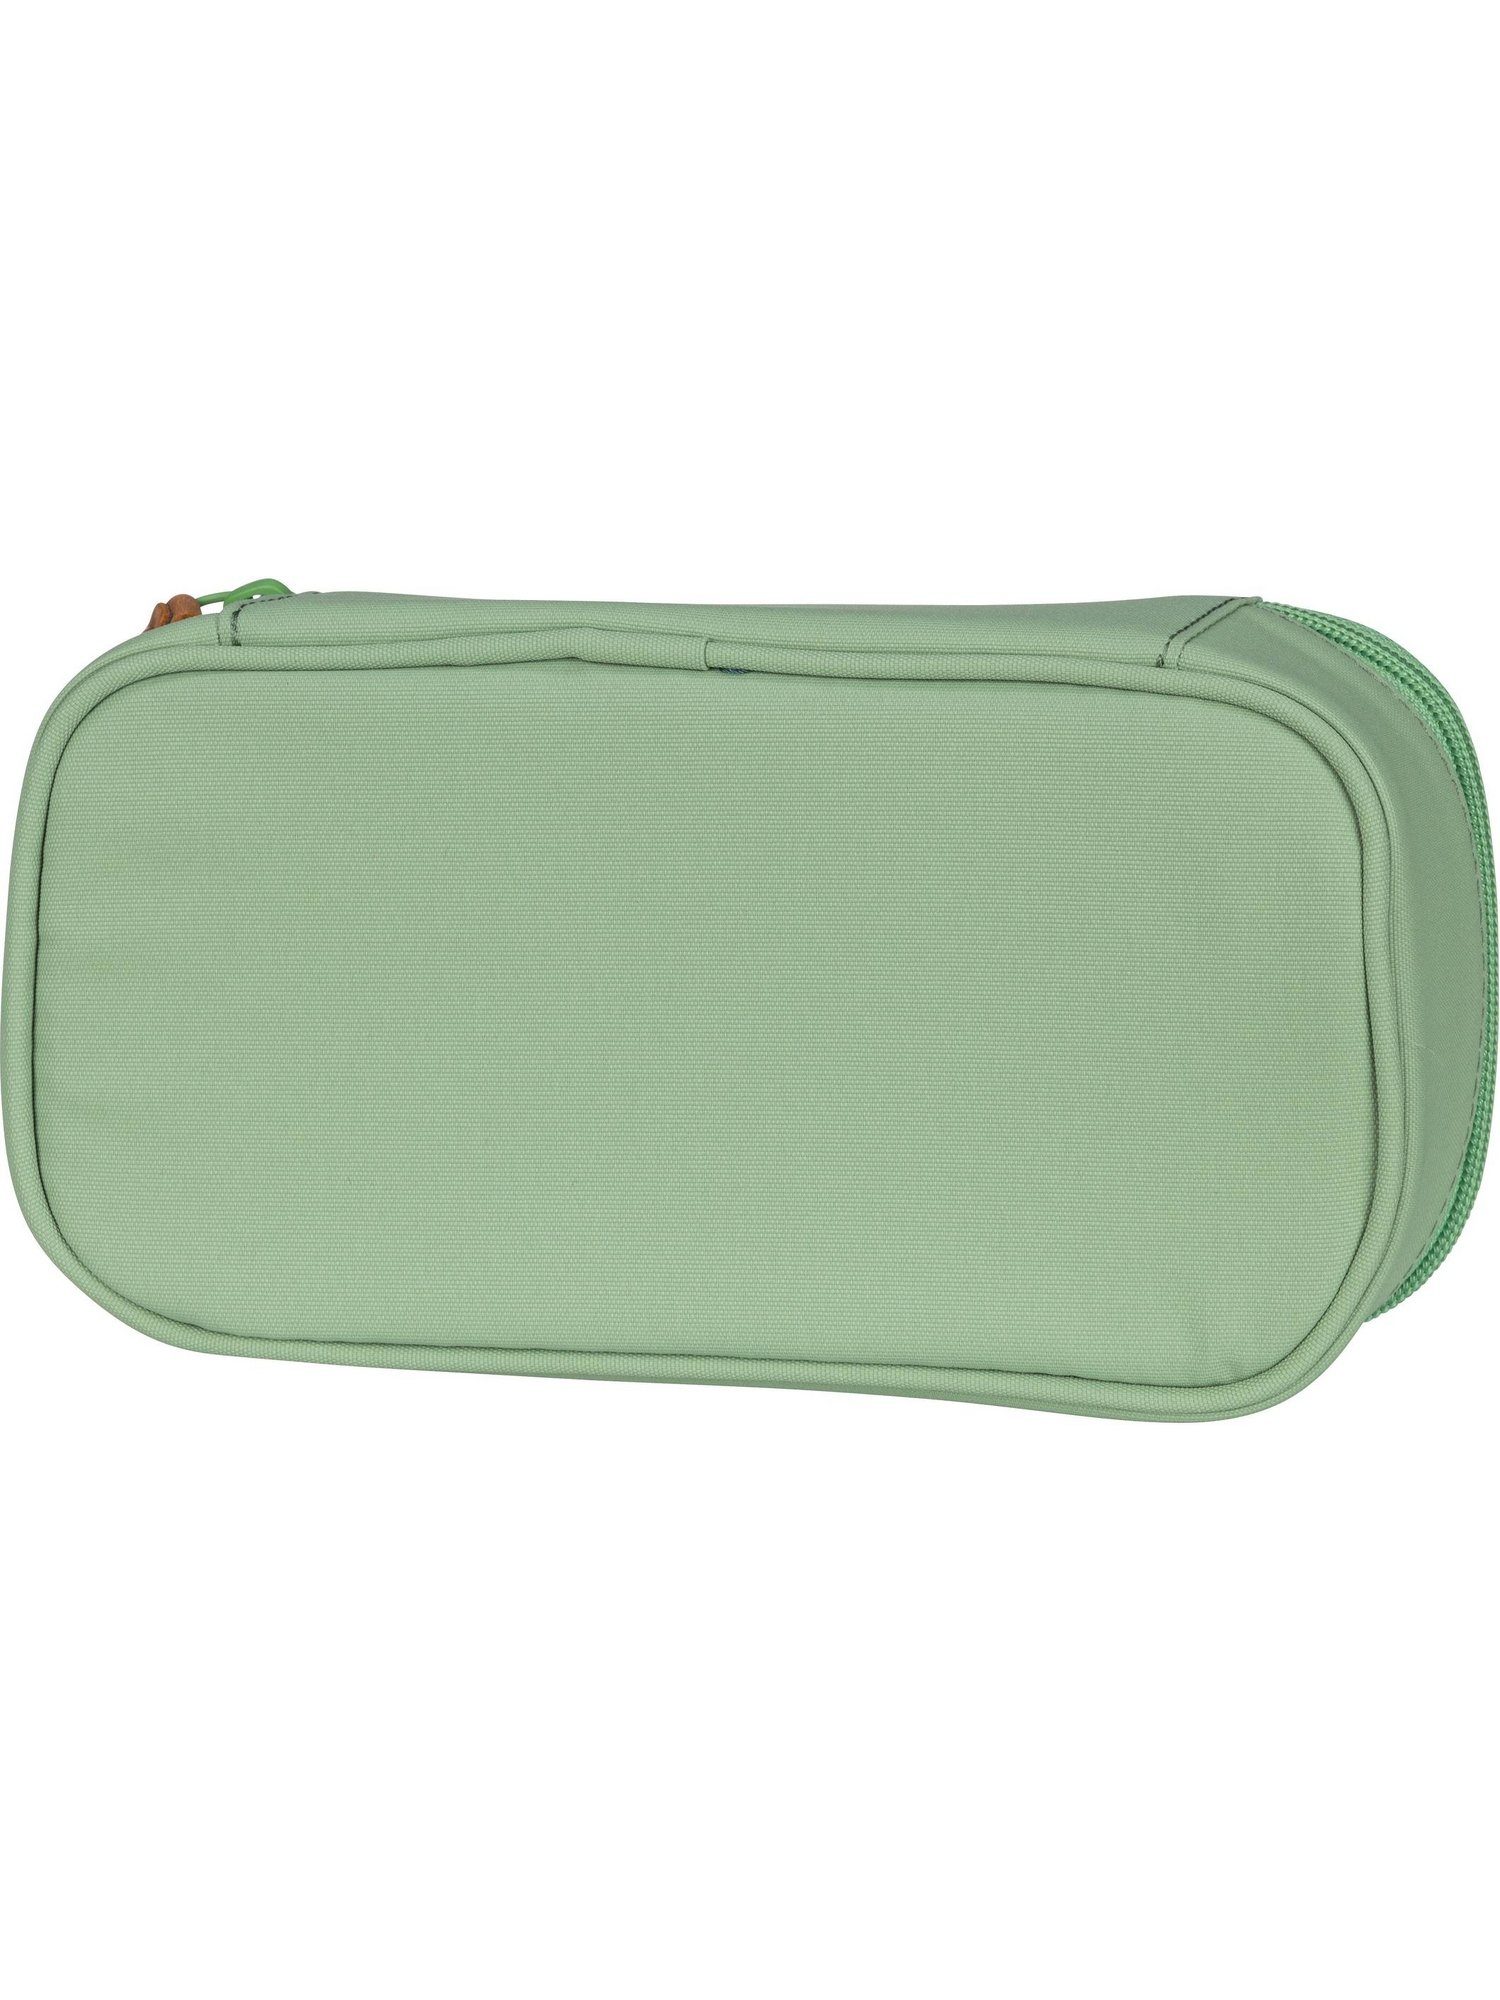 Federmäppchen Satch Schlamperbox satch Green Nordic Edition Jade